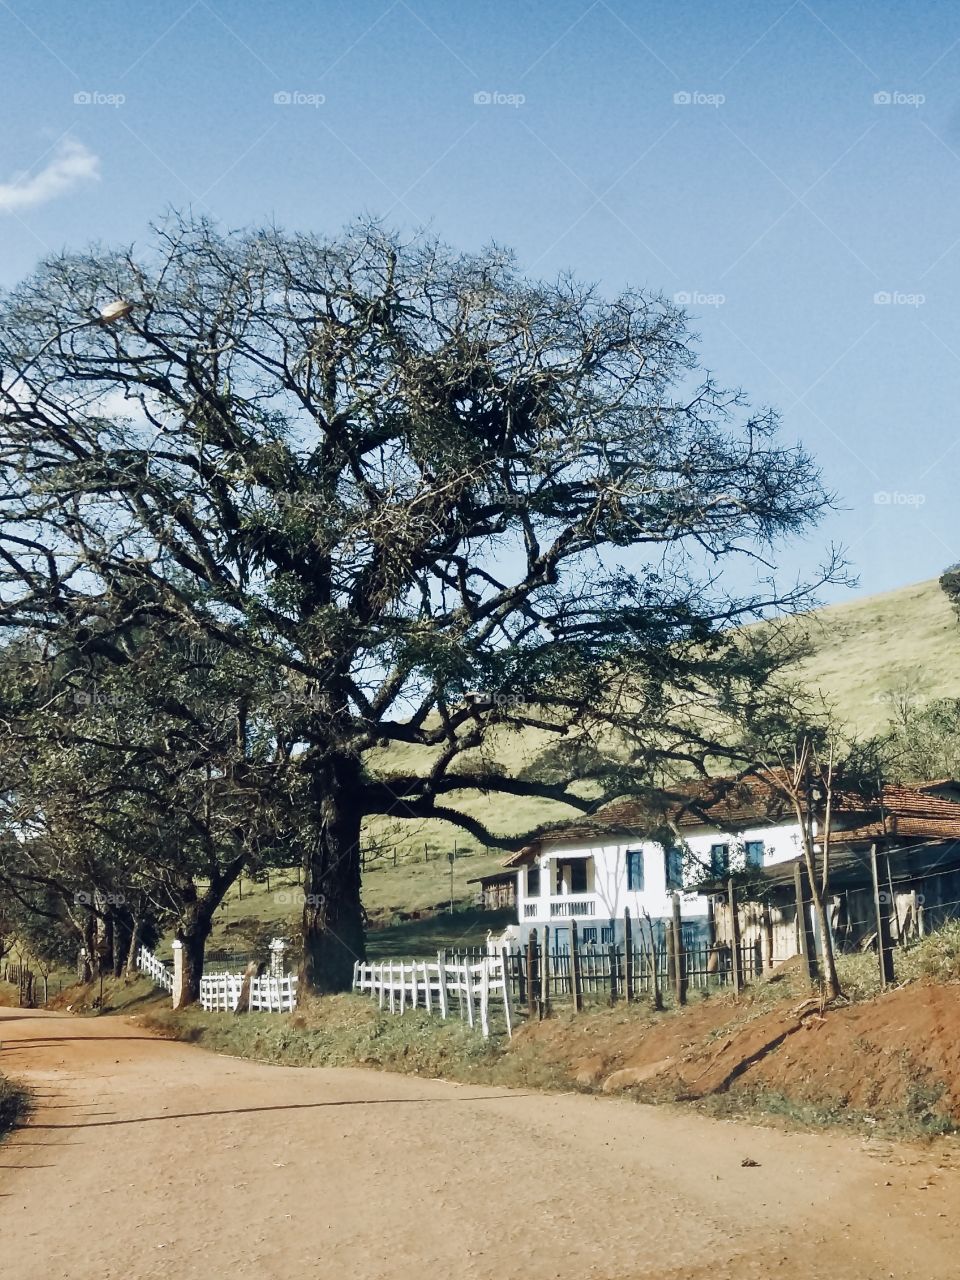 O caminho da roça - Sul de Minas Gerais Brasil